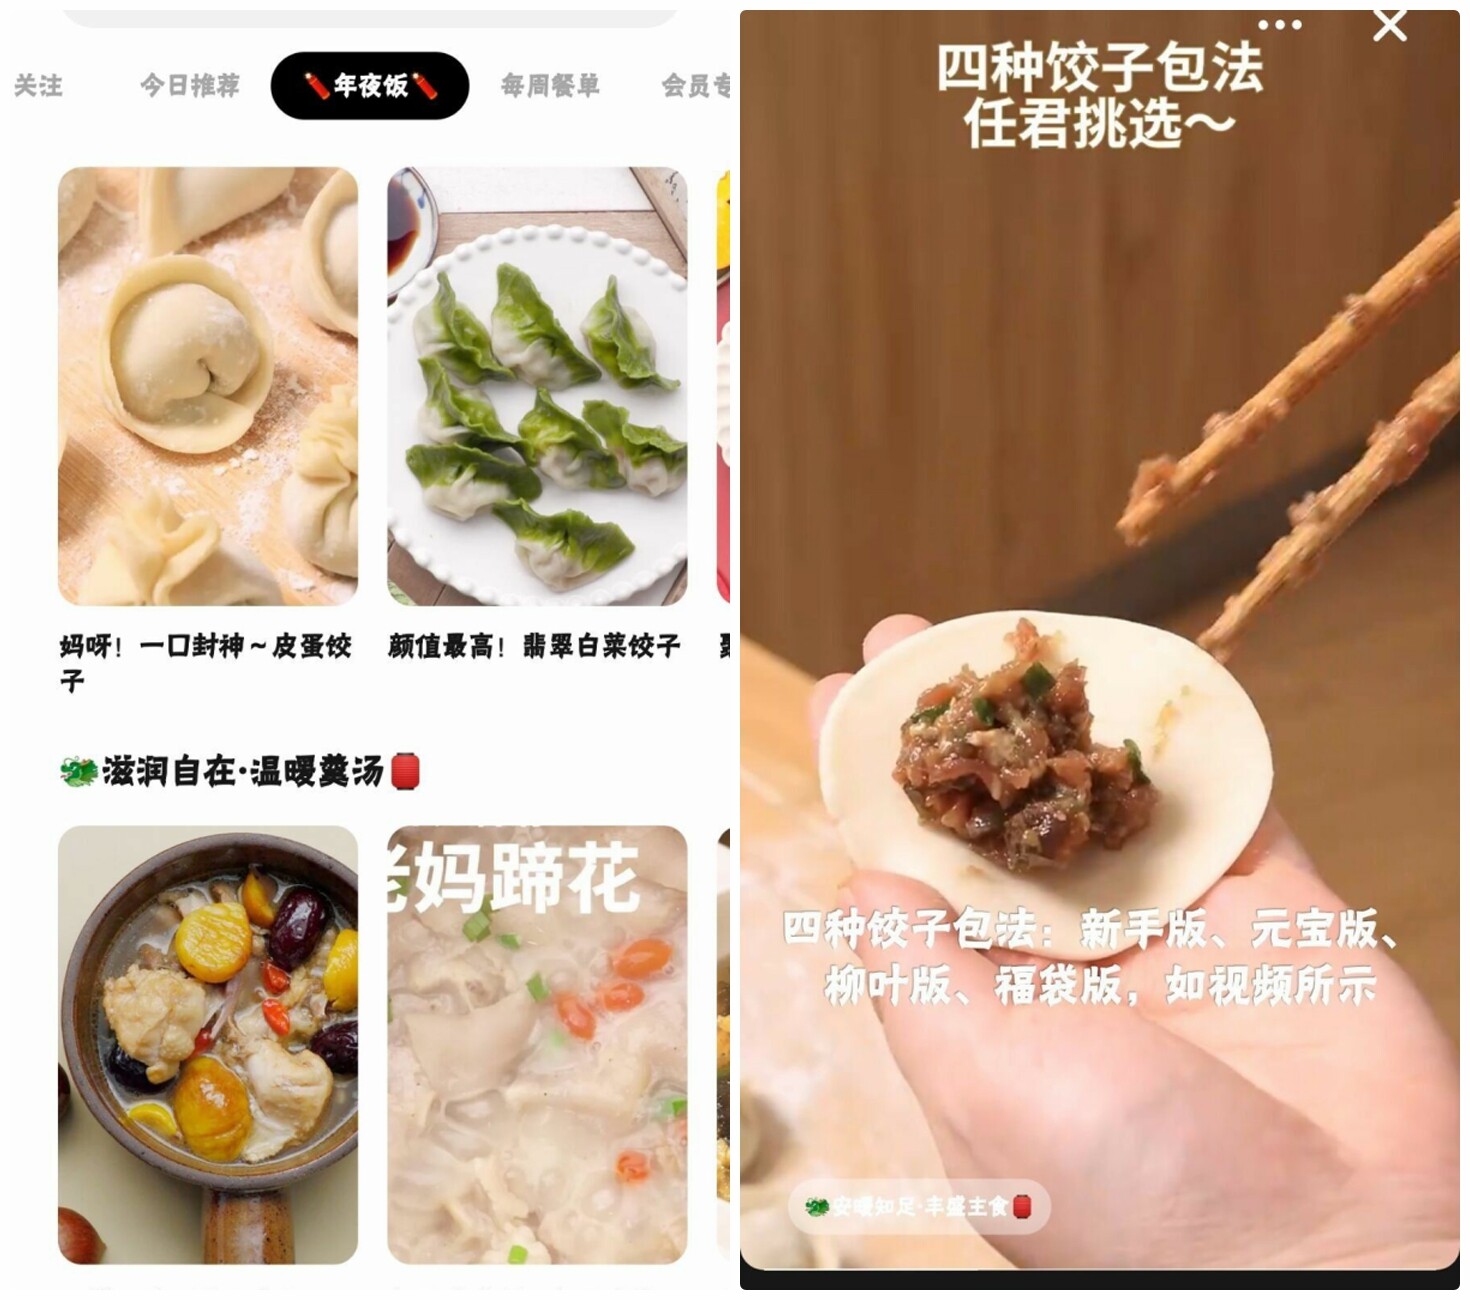 懒饭_3.0.0，高清做菜视频，简洁无弹窗-微分享自媒体驿站